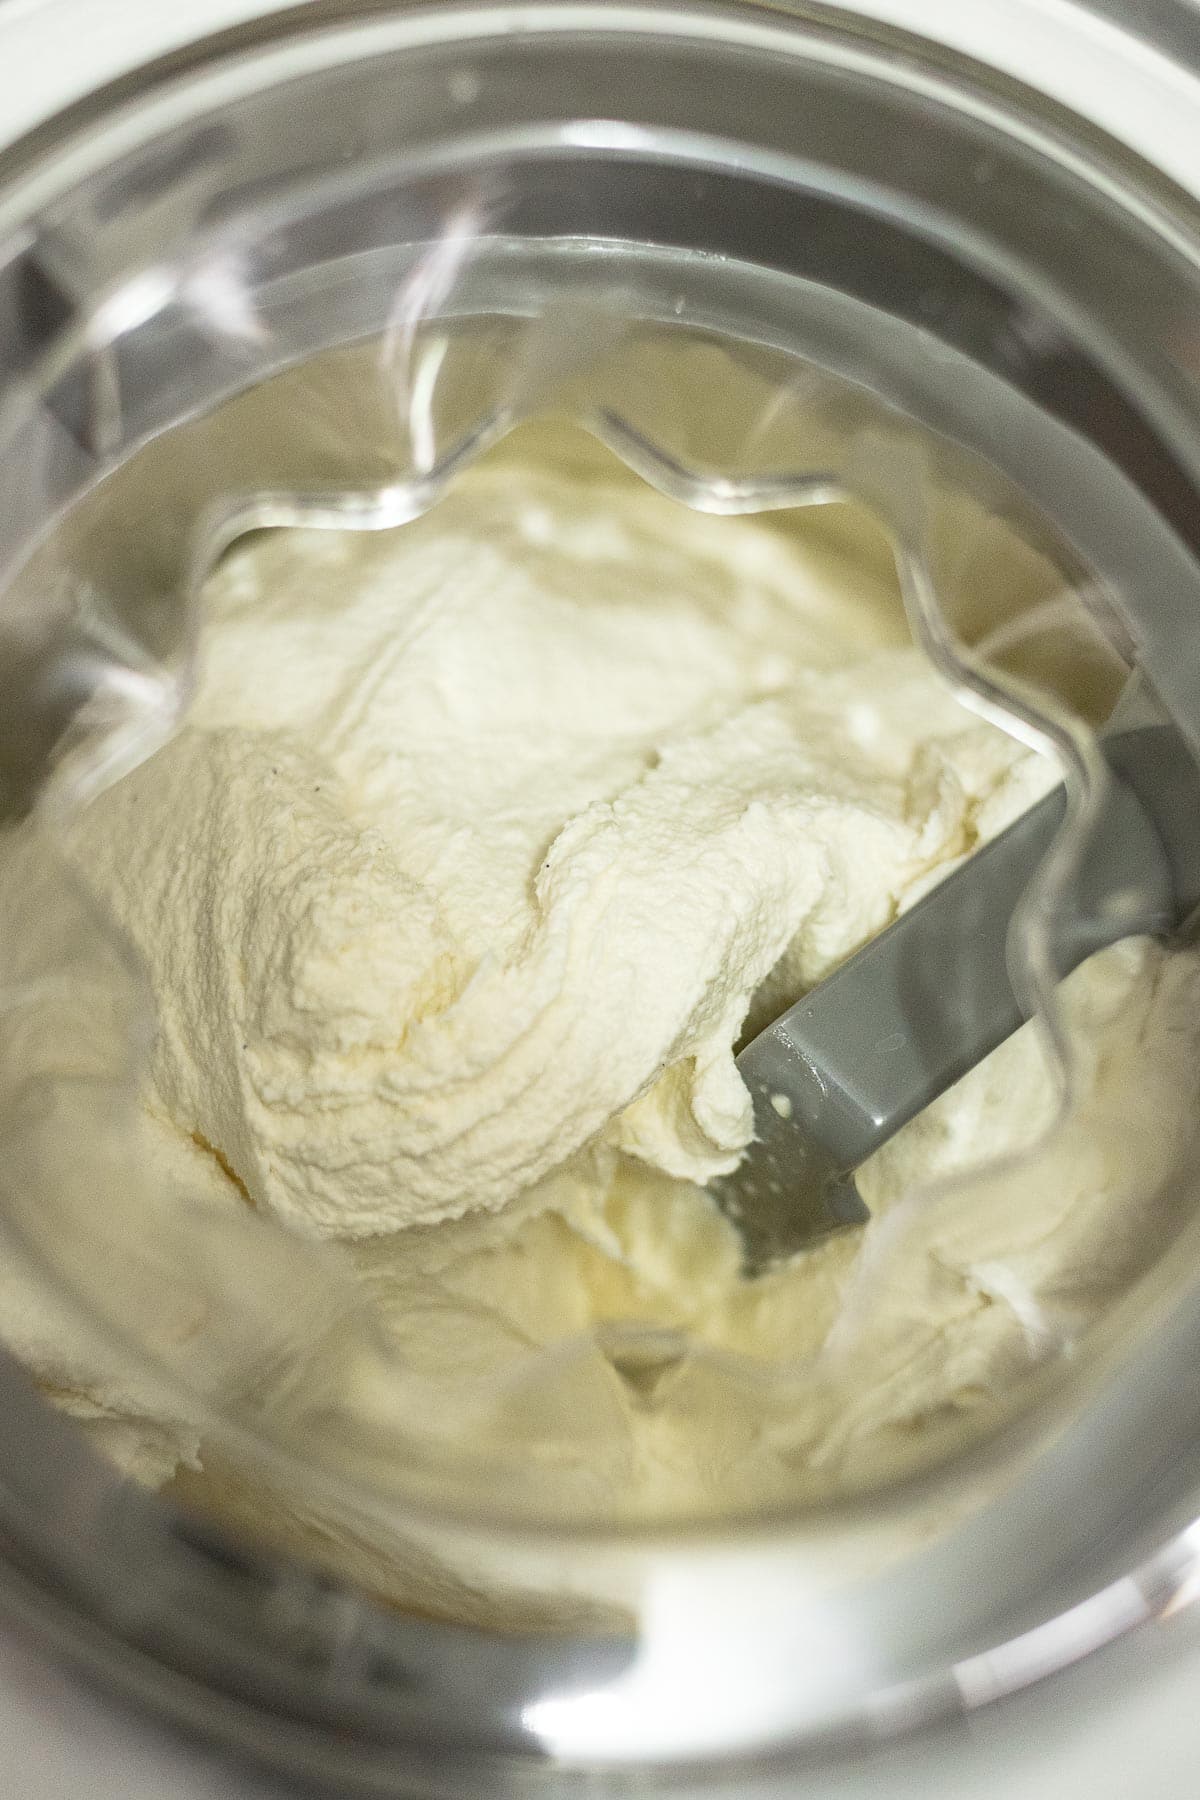 French Vanilla Ice Cream churning in ice cream machine